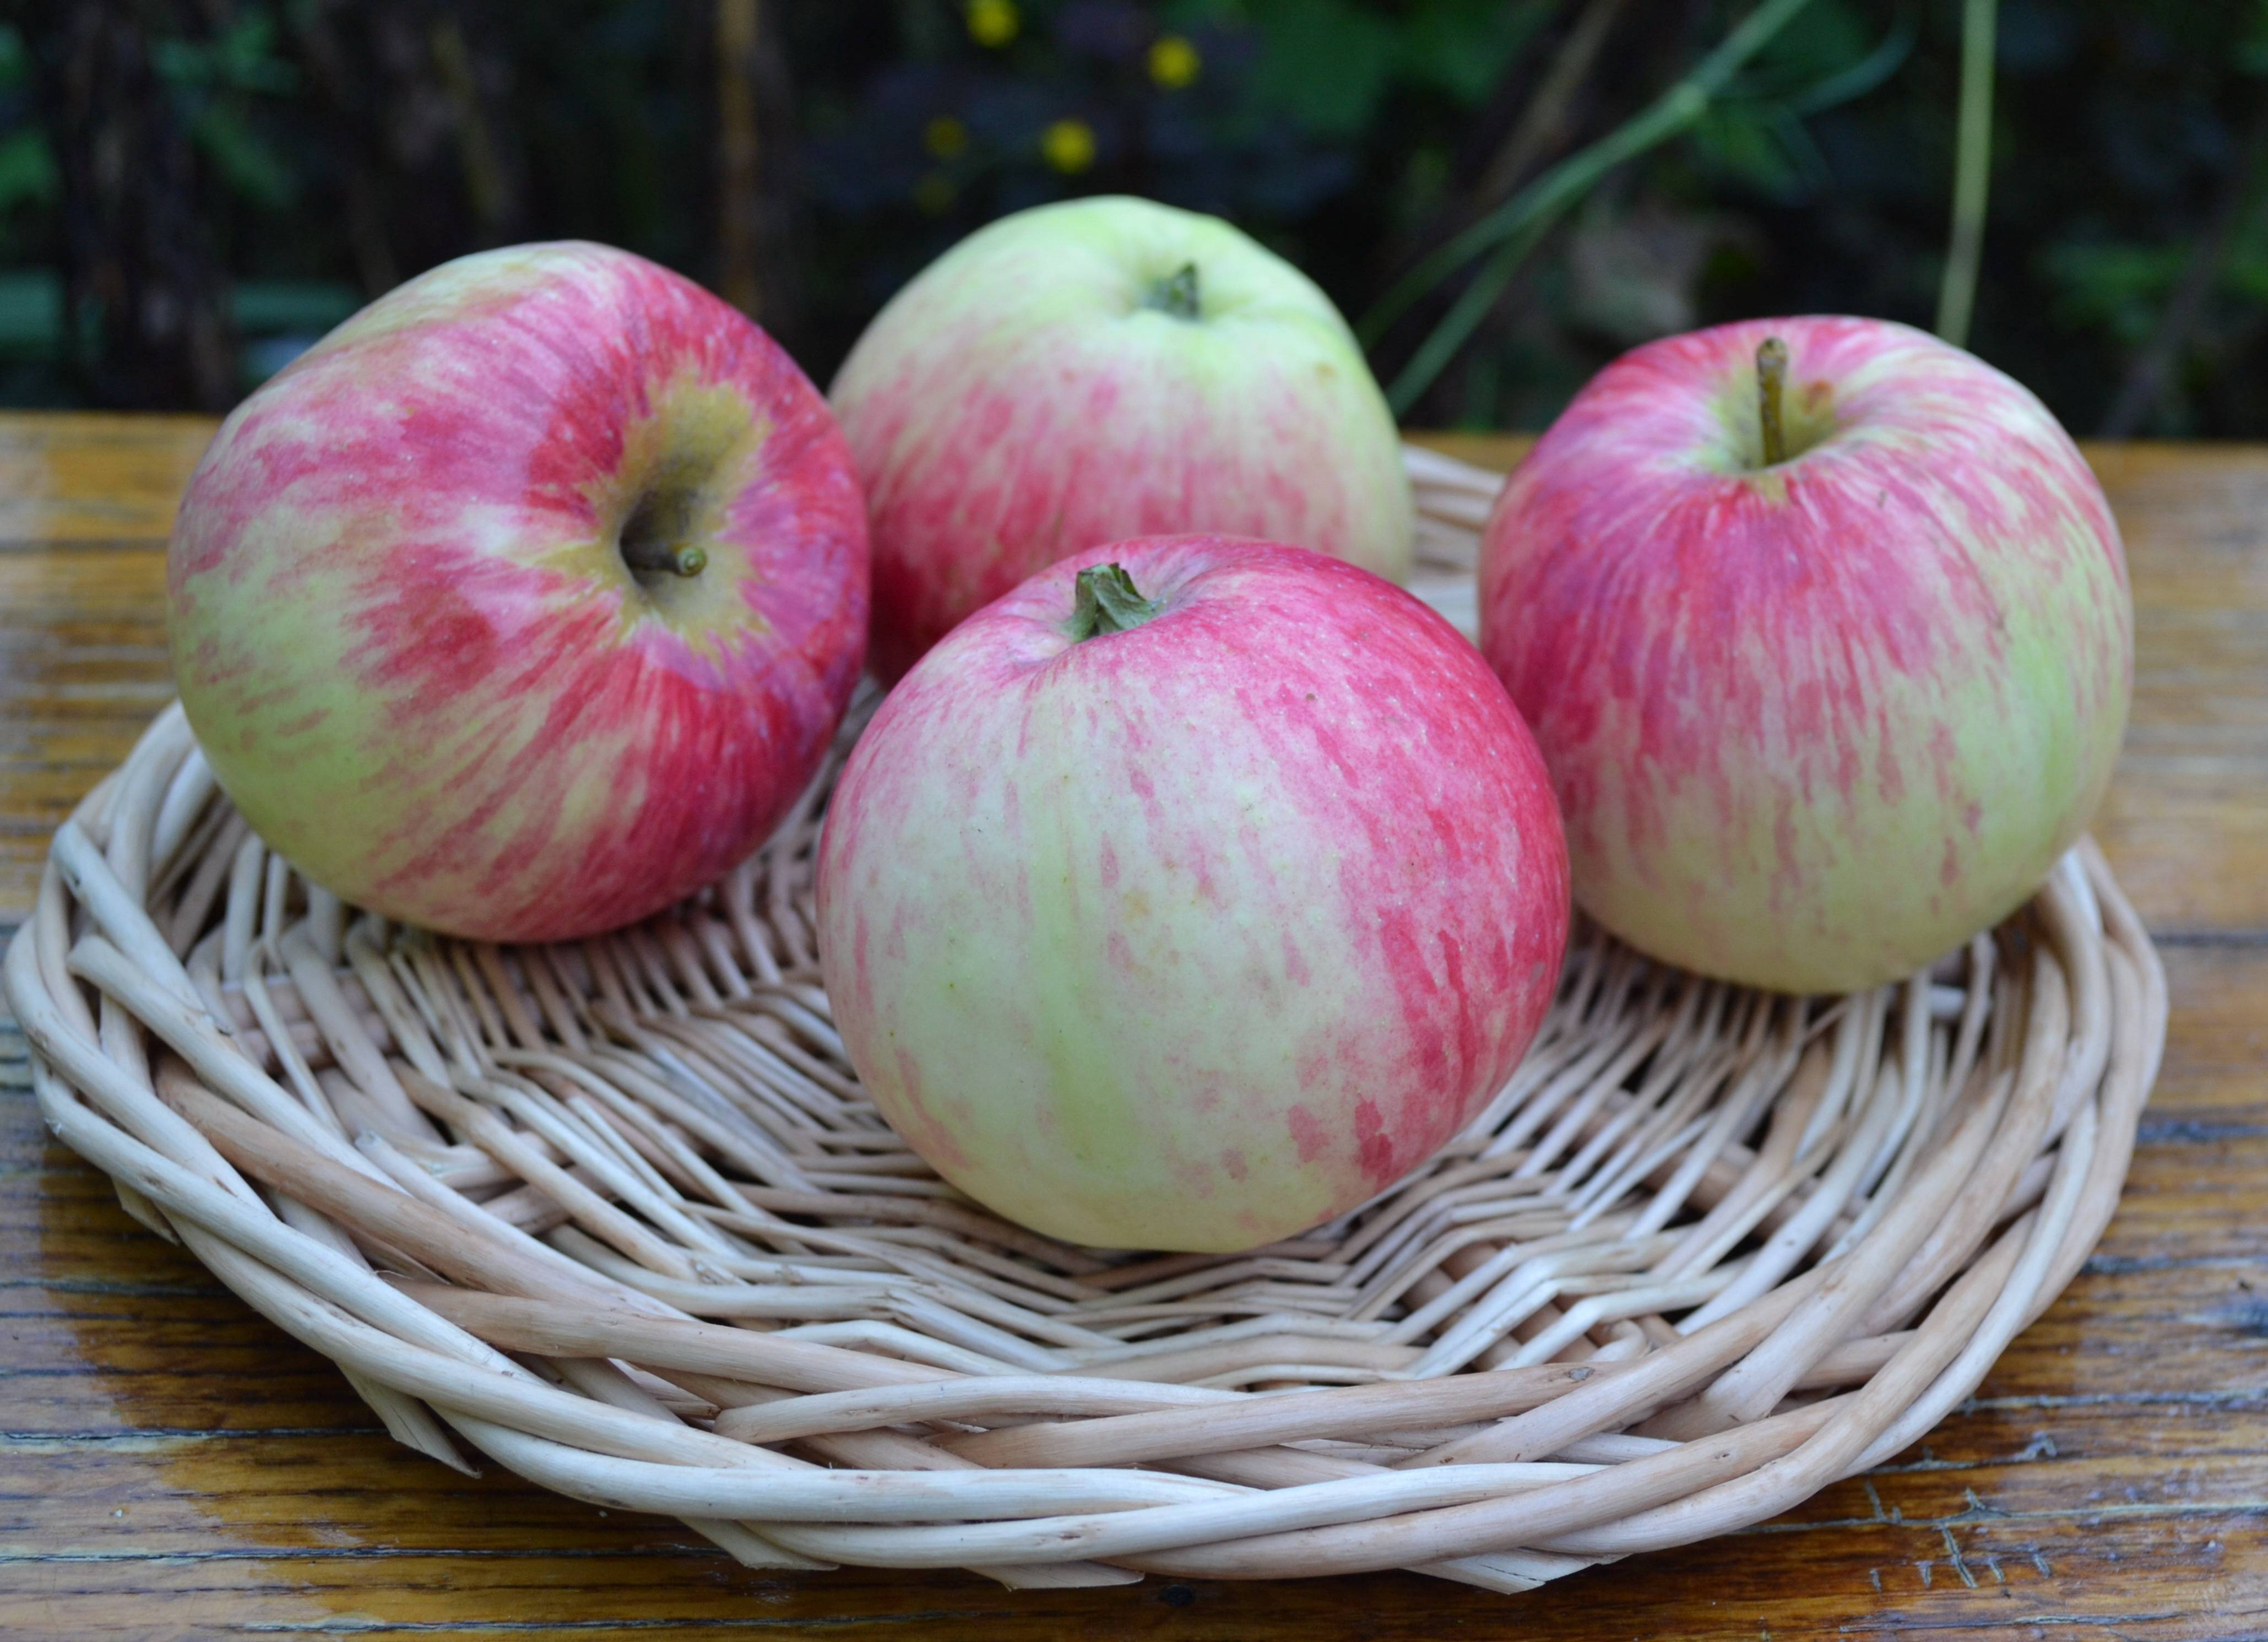 Описание сорта яблони красавица сада: фото яблок, важные характеристики, урожайность с дерева